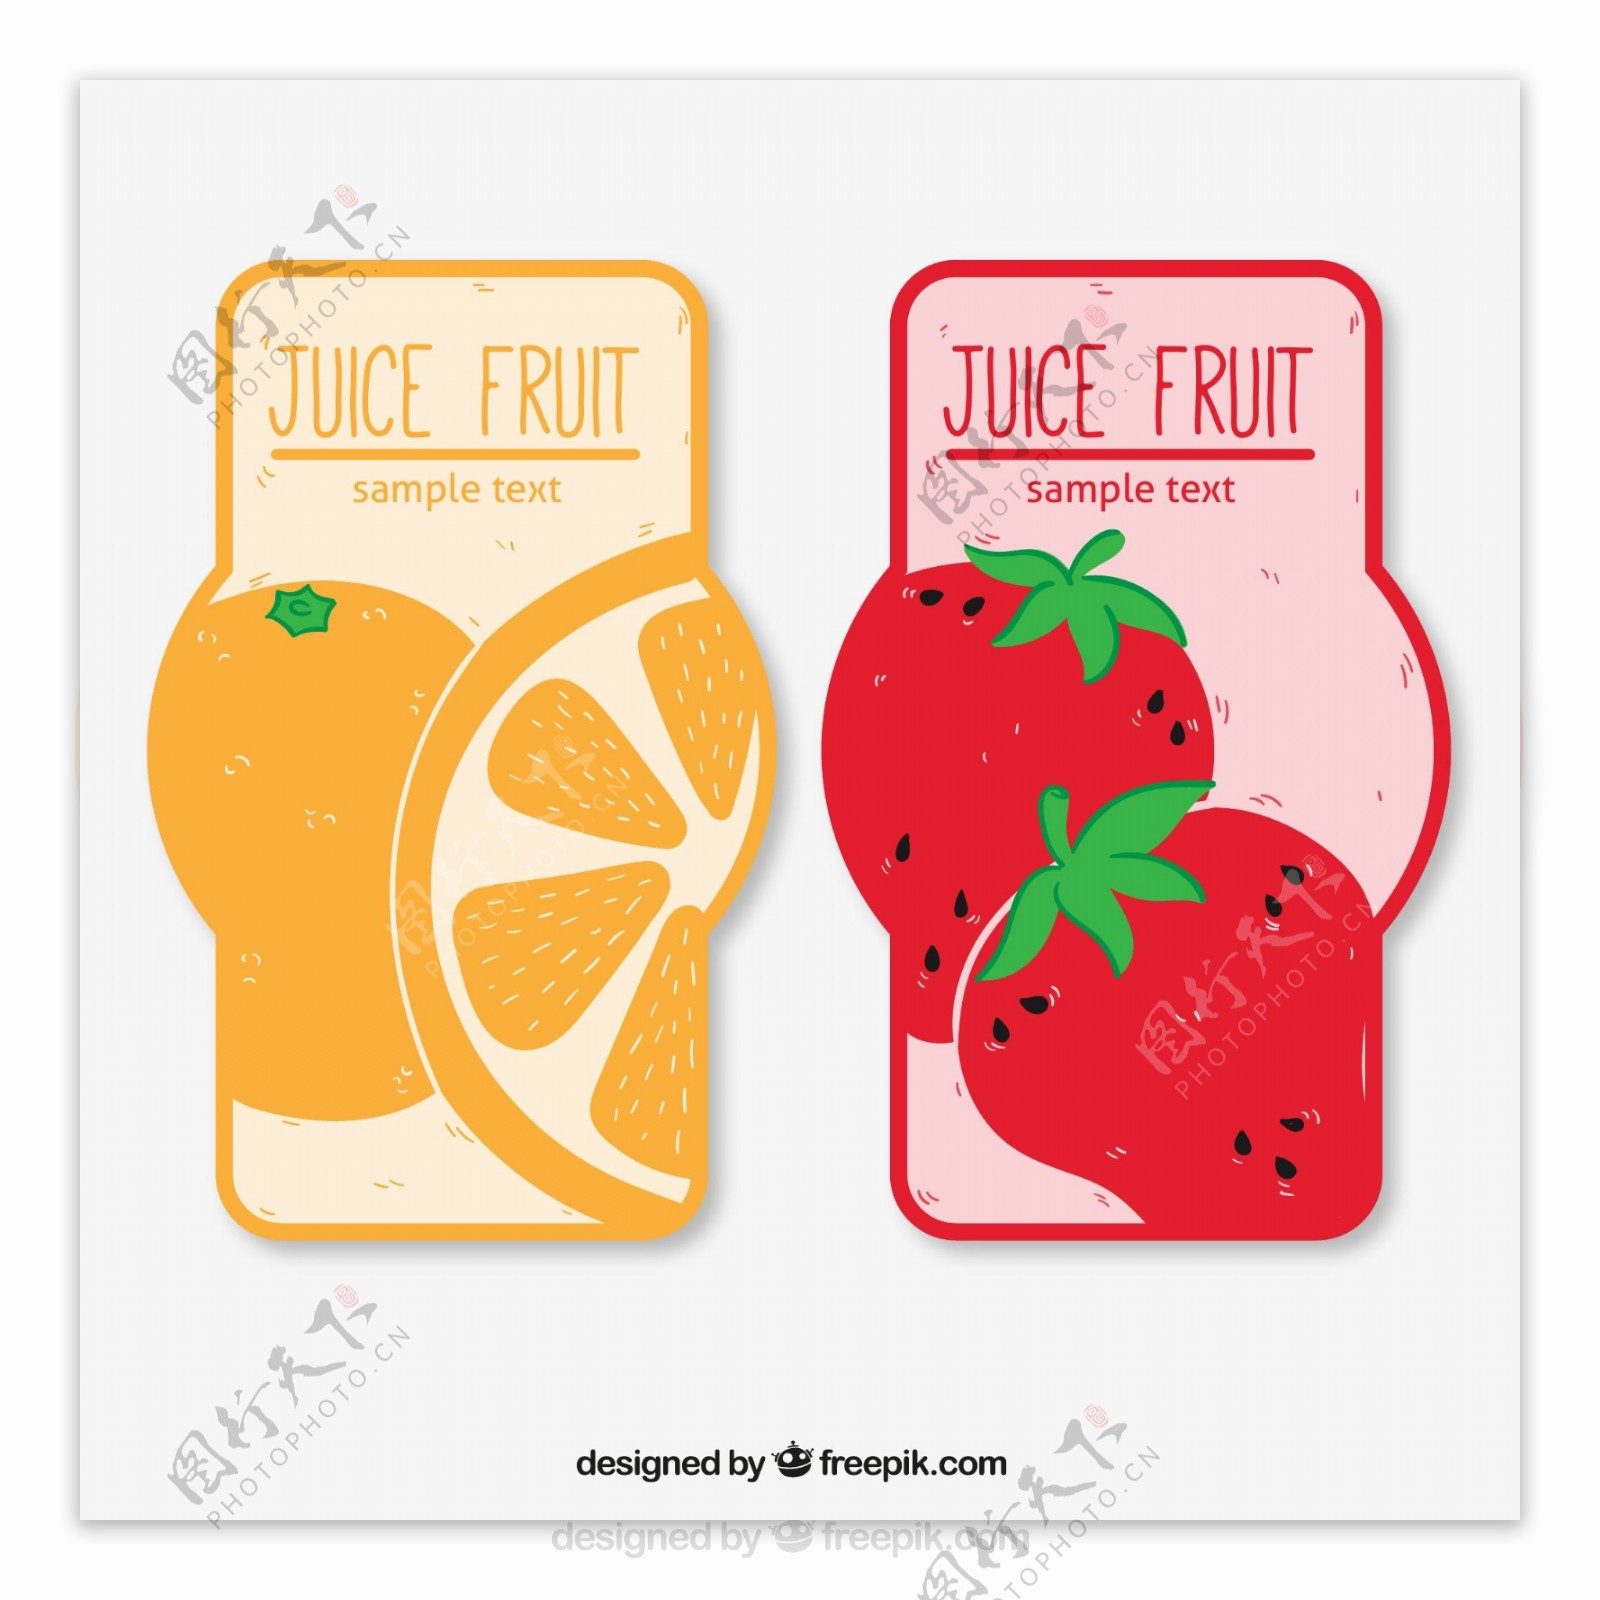 彩色果汁橙子和草莓标签